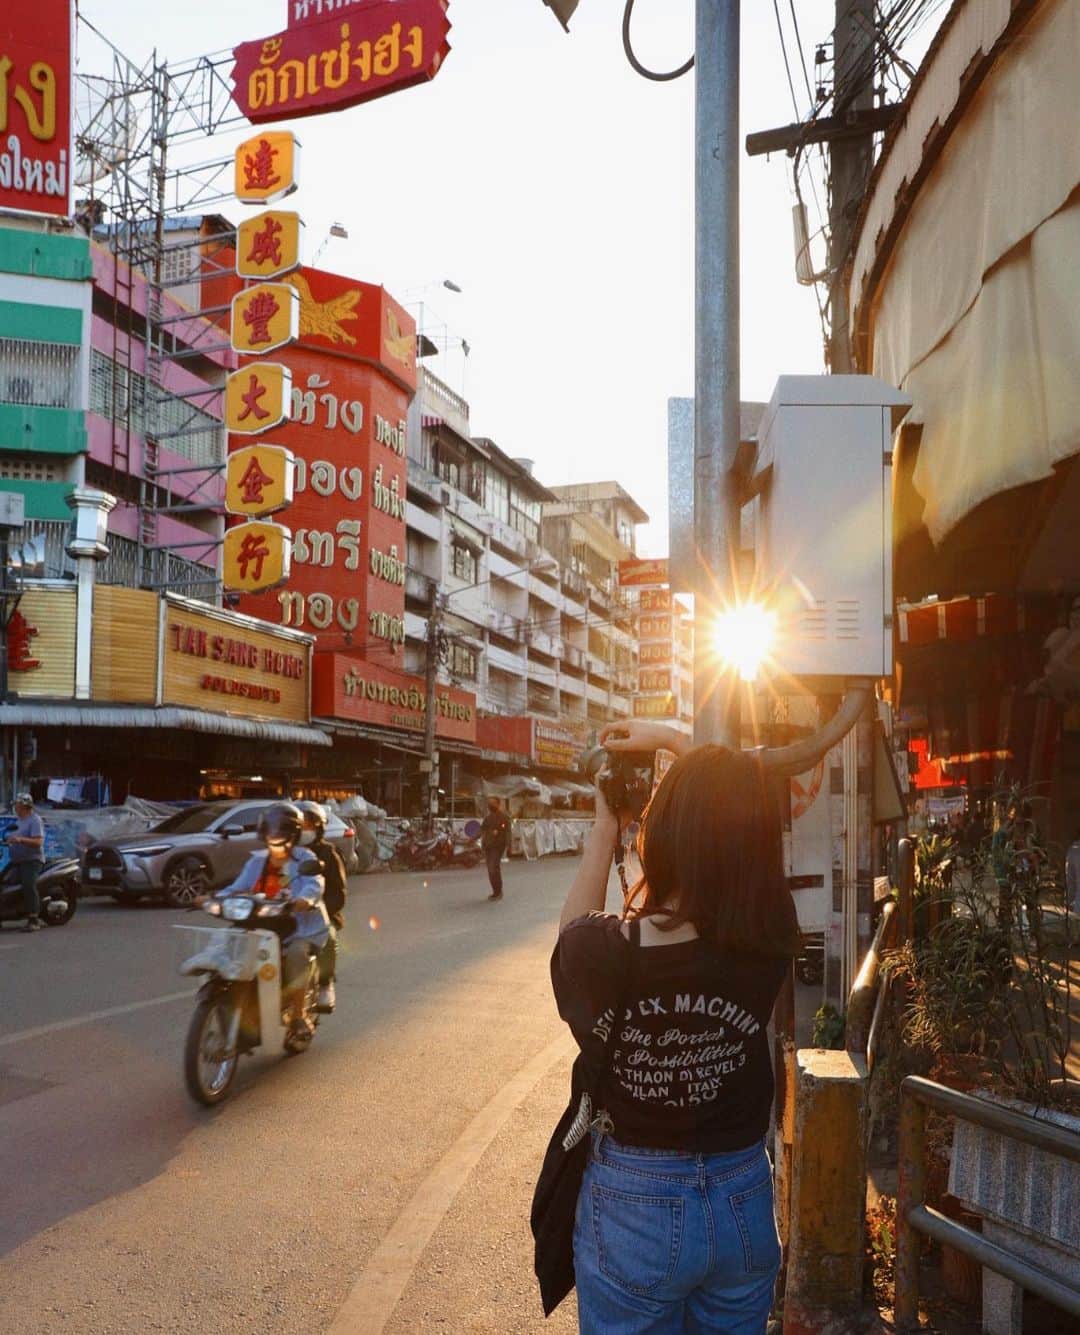 MEGのインスタグラム：「#thailand_megvlog   タイ・チェンマイで街歩き。 カフェ天国なチェンマイでは、カフェを覗くとノマドワーカーが多くて、すごくのんびりできる落ち着く街。 ご飯も洋服もバンコクより価格が少し安い。  自然に囲まれてる。 @tomo0801 さんと街歩き、楽しかった〜📸⛰️ 隣のチェンライにも行ってみたい。  バンコクから飛行機で1時間半ぐらい。帰りは、夜行バスで12時間半。 帰りのバスの中は冷蔵庫の中のようだった☺️  #チェンマイ旅行 #チェンマイ #タイ旅行 #海外旅行 #チェンマイ観光  #こんなタイ知らなかった   #chaingmai #thailand #thailandtravel #nikoncreators」